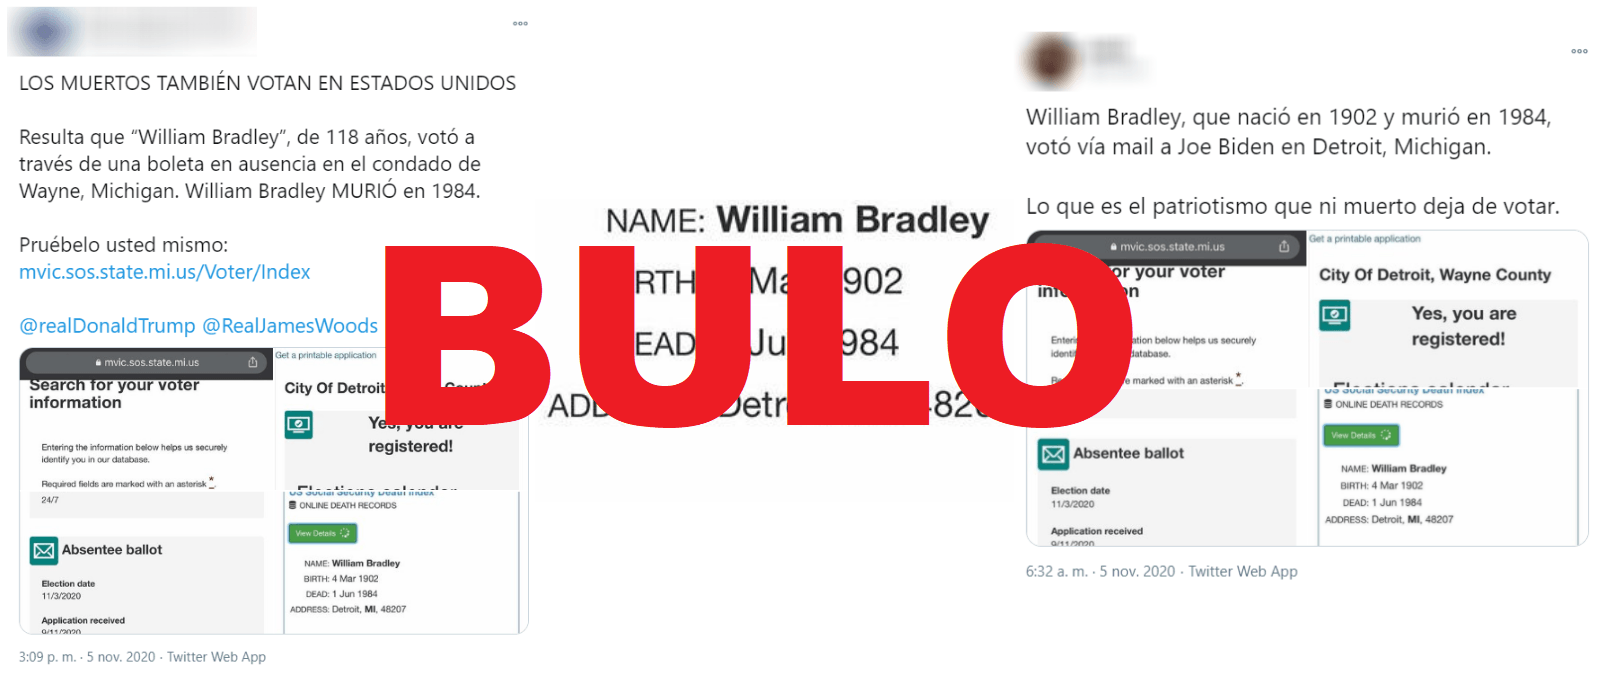 No, no es cierto que se haya emitido un voto a favor de Joe Biden en Detroit (Michigan) a nombre de un ciudadano llamado William Bradley...